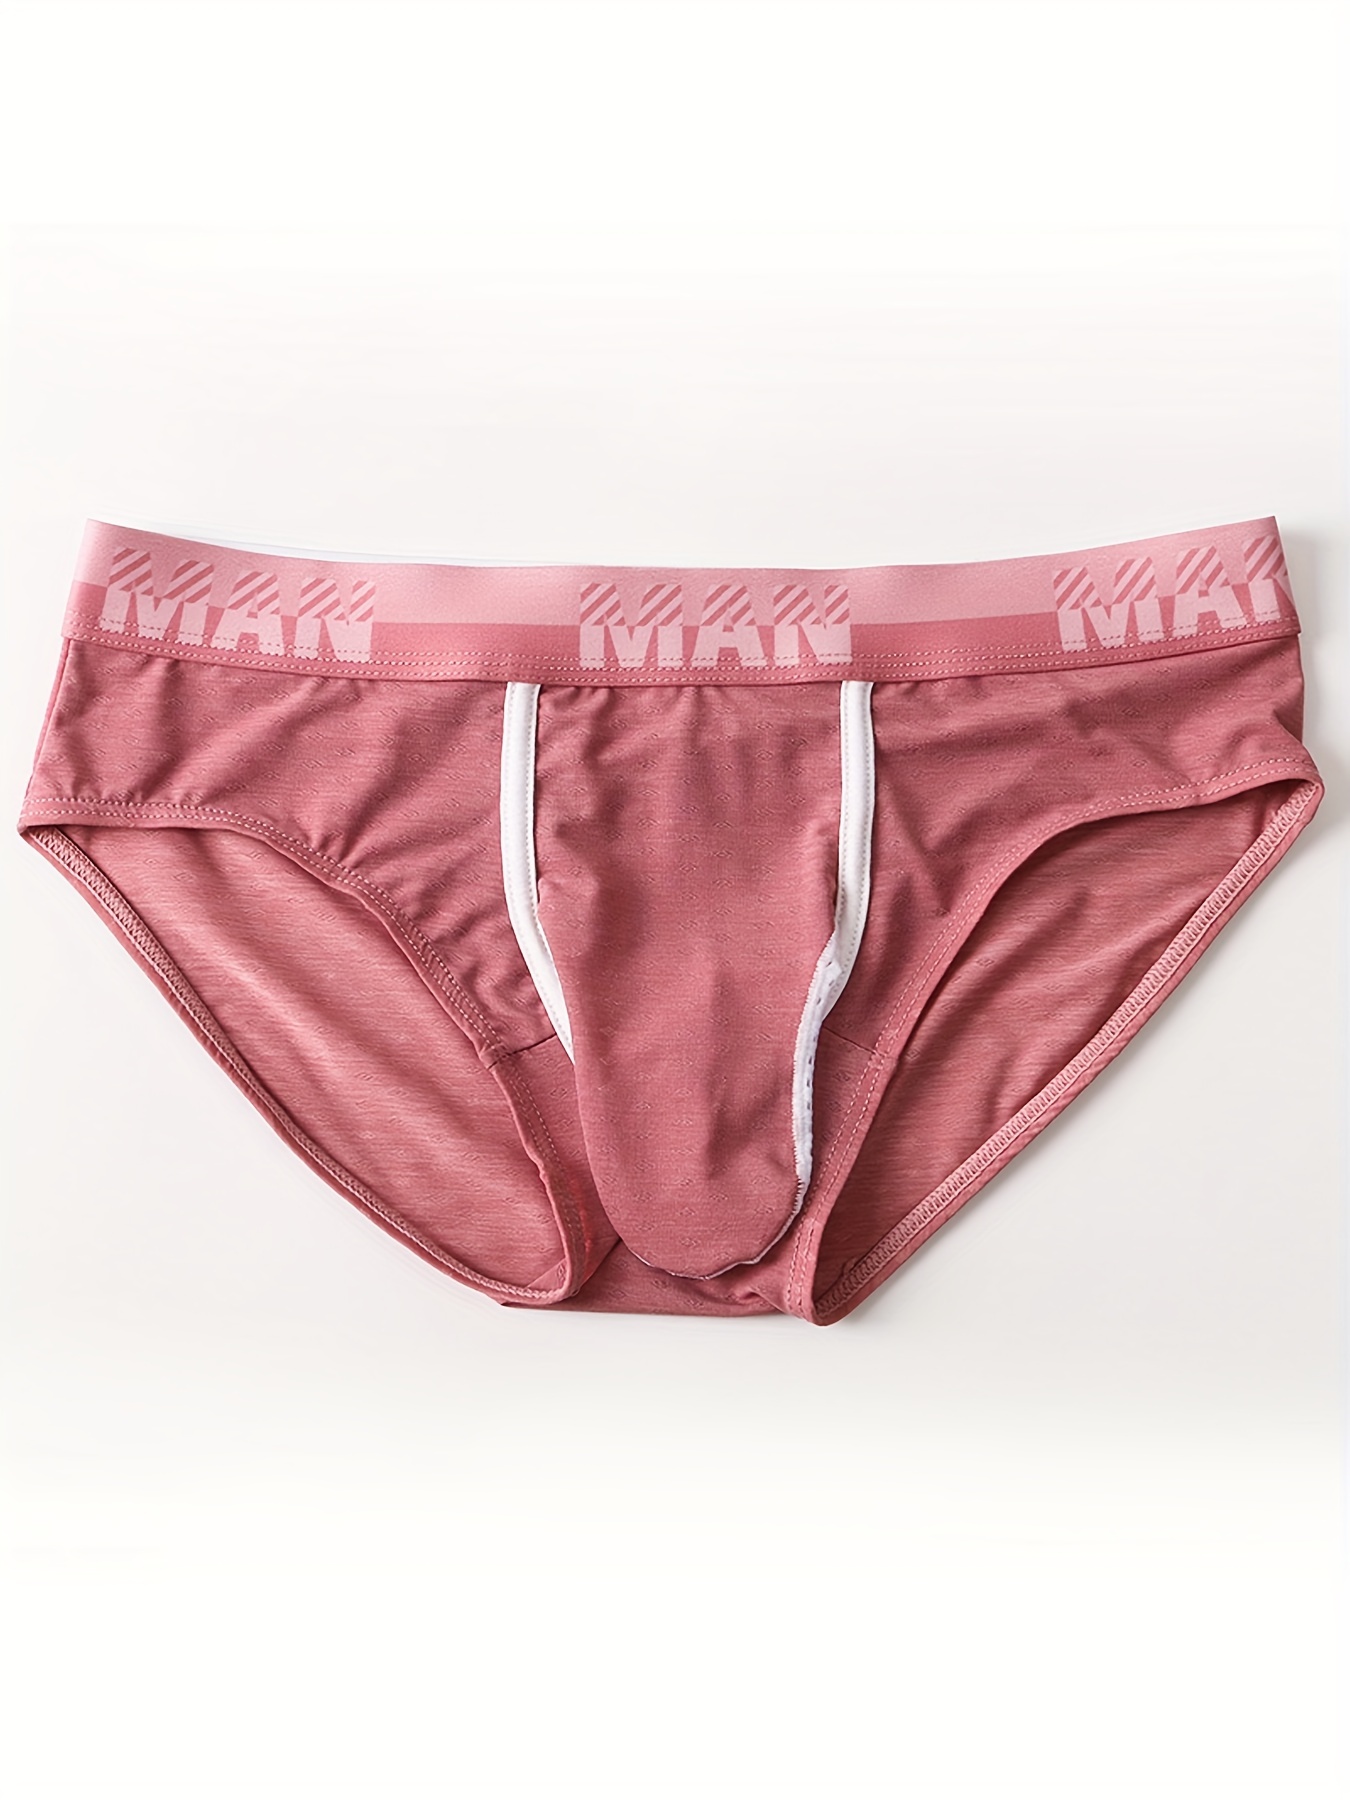 Loytwd Mens Fashion Penis erect sheath Breifs Underwear (Color